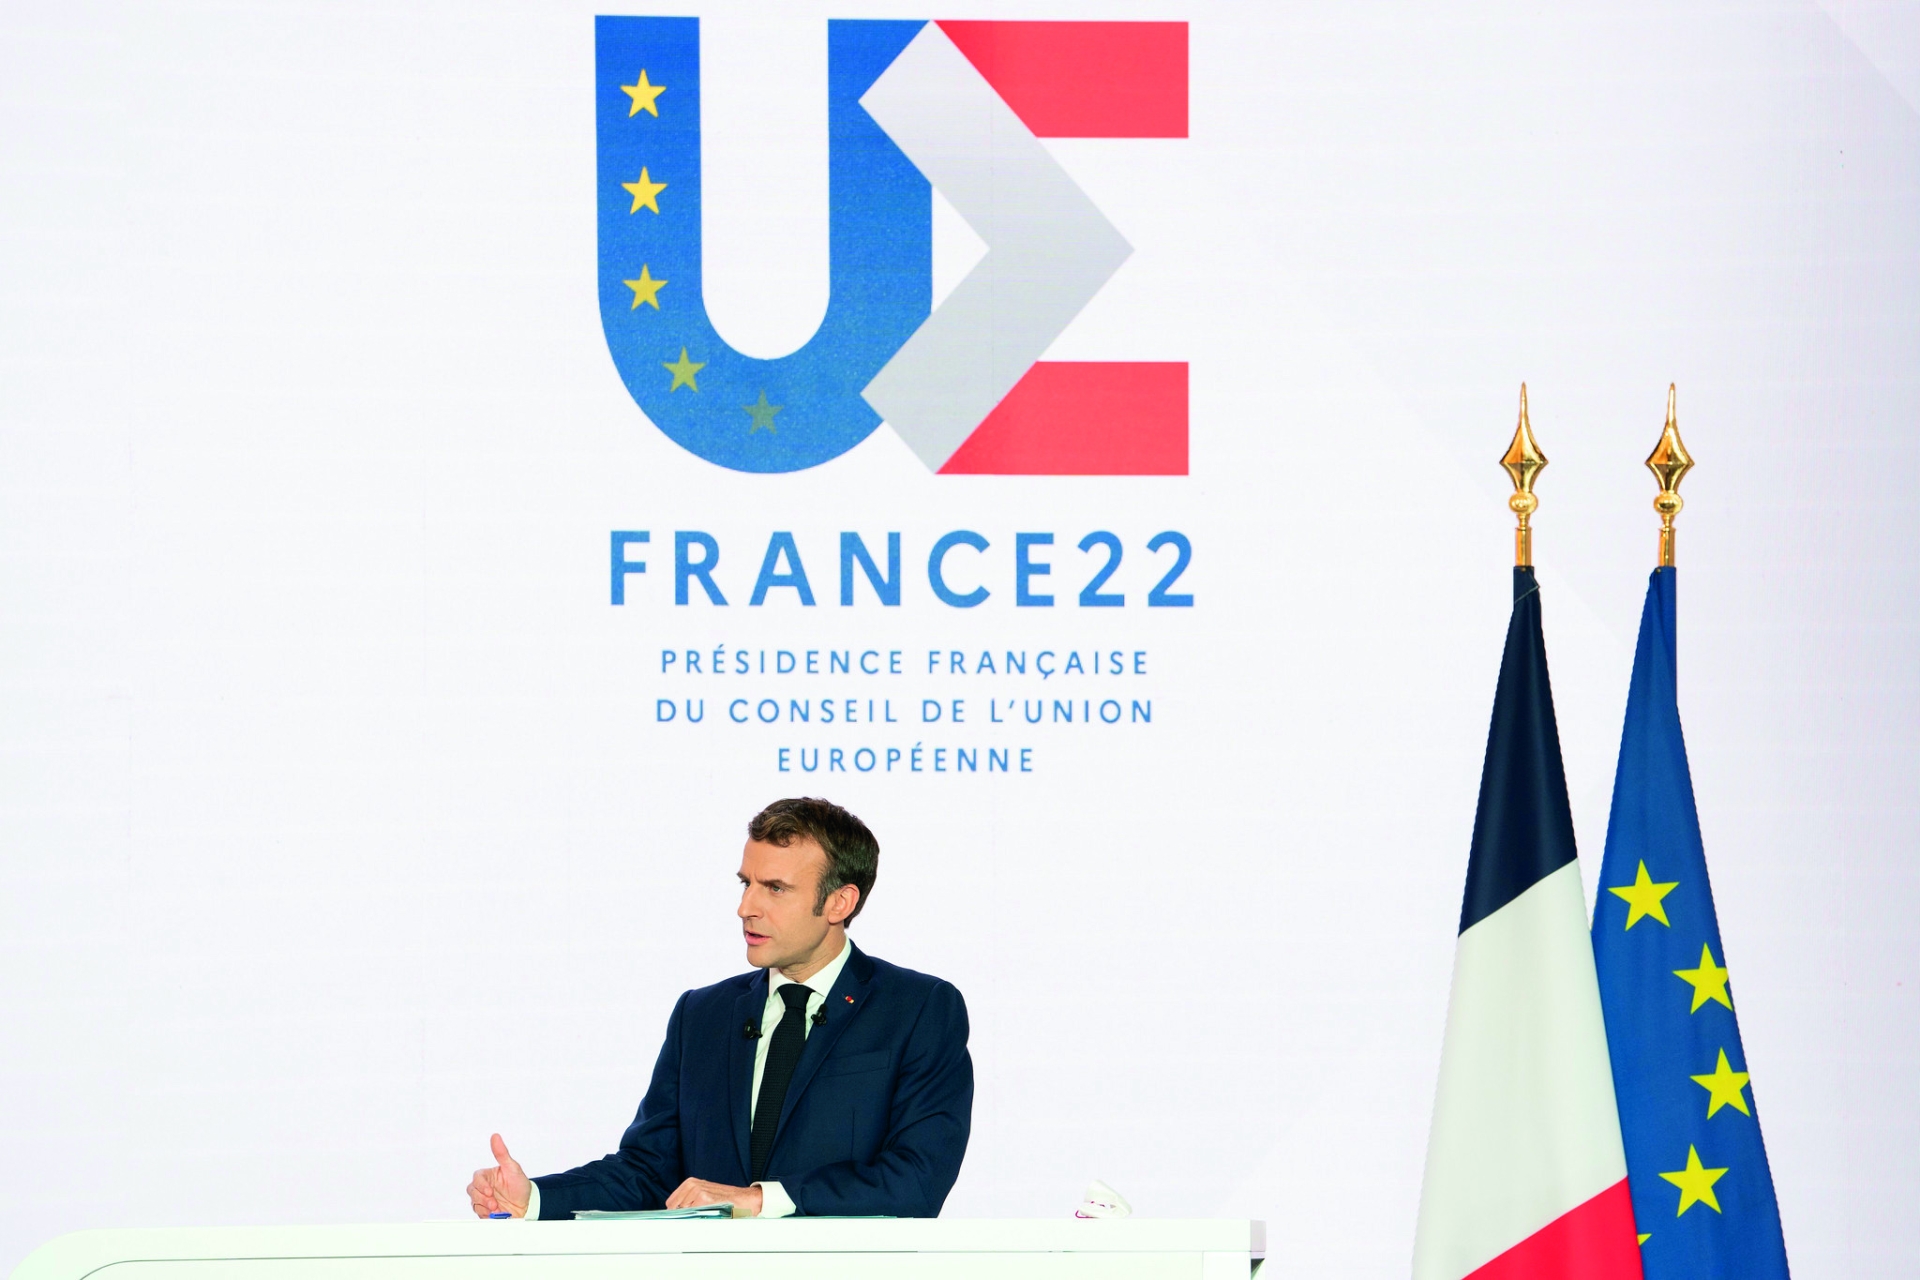 Les enjeux de la présidence française du Conseil de l’Union européenne